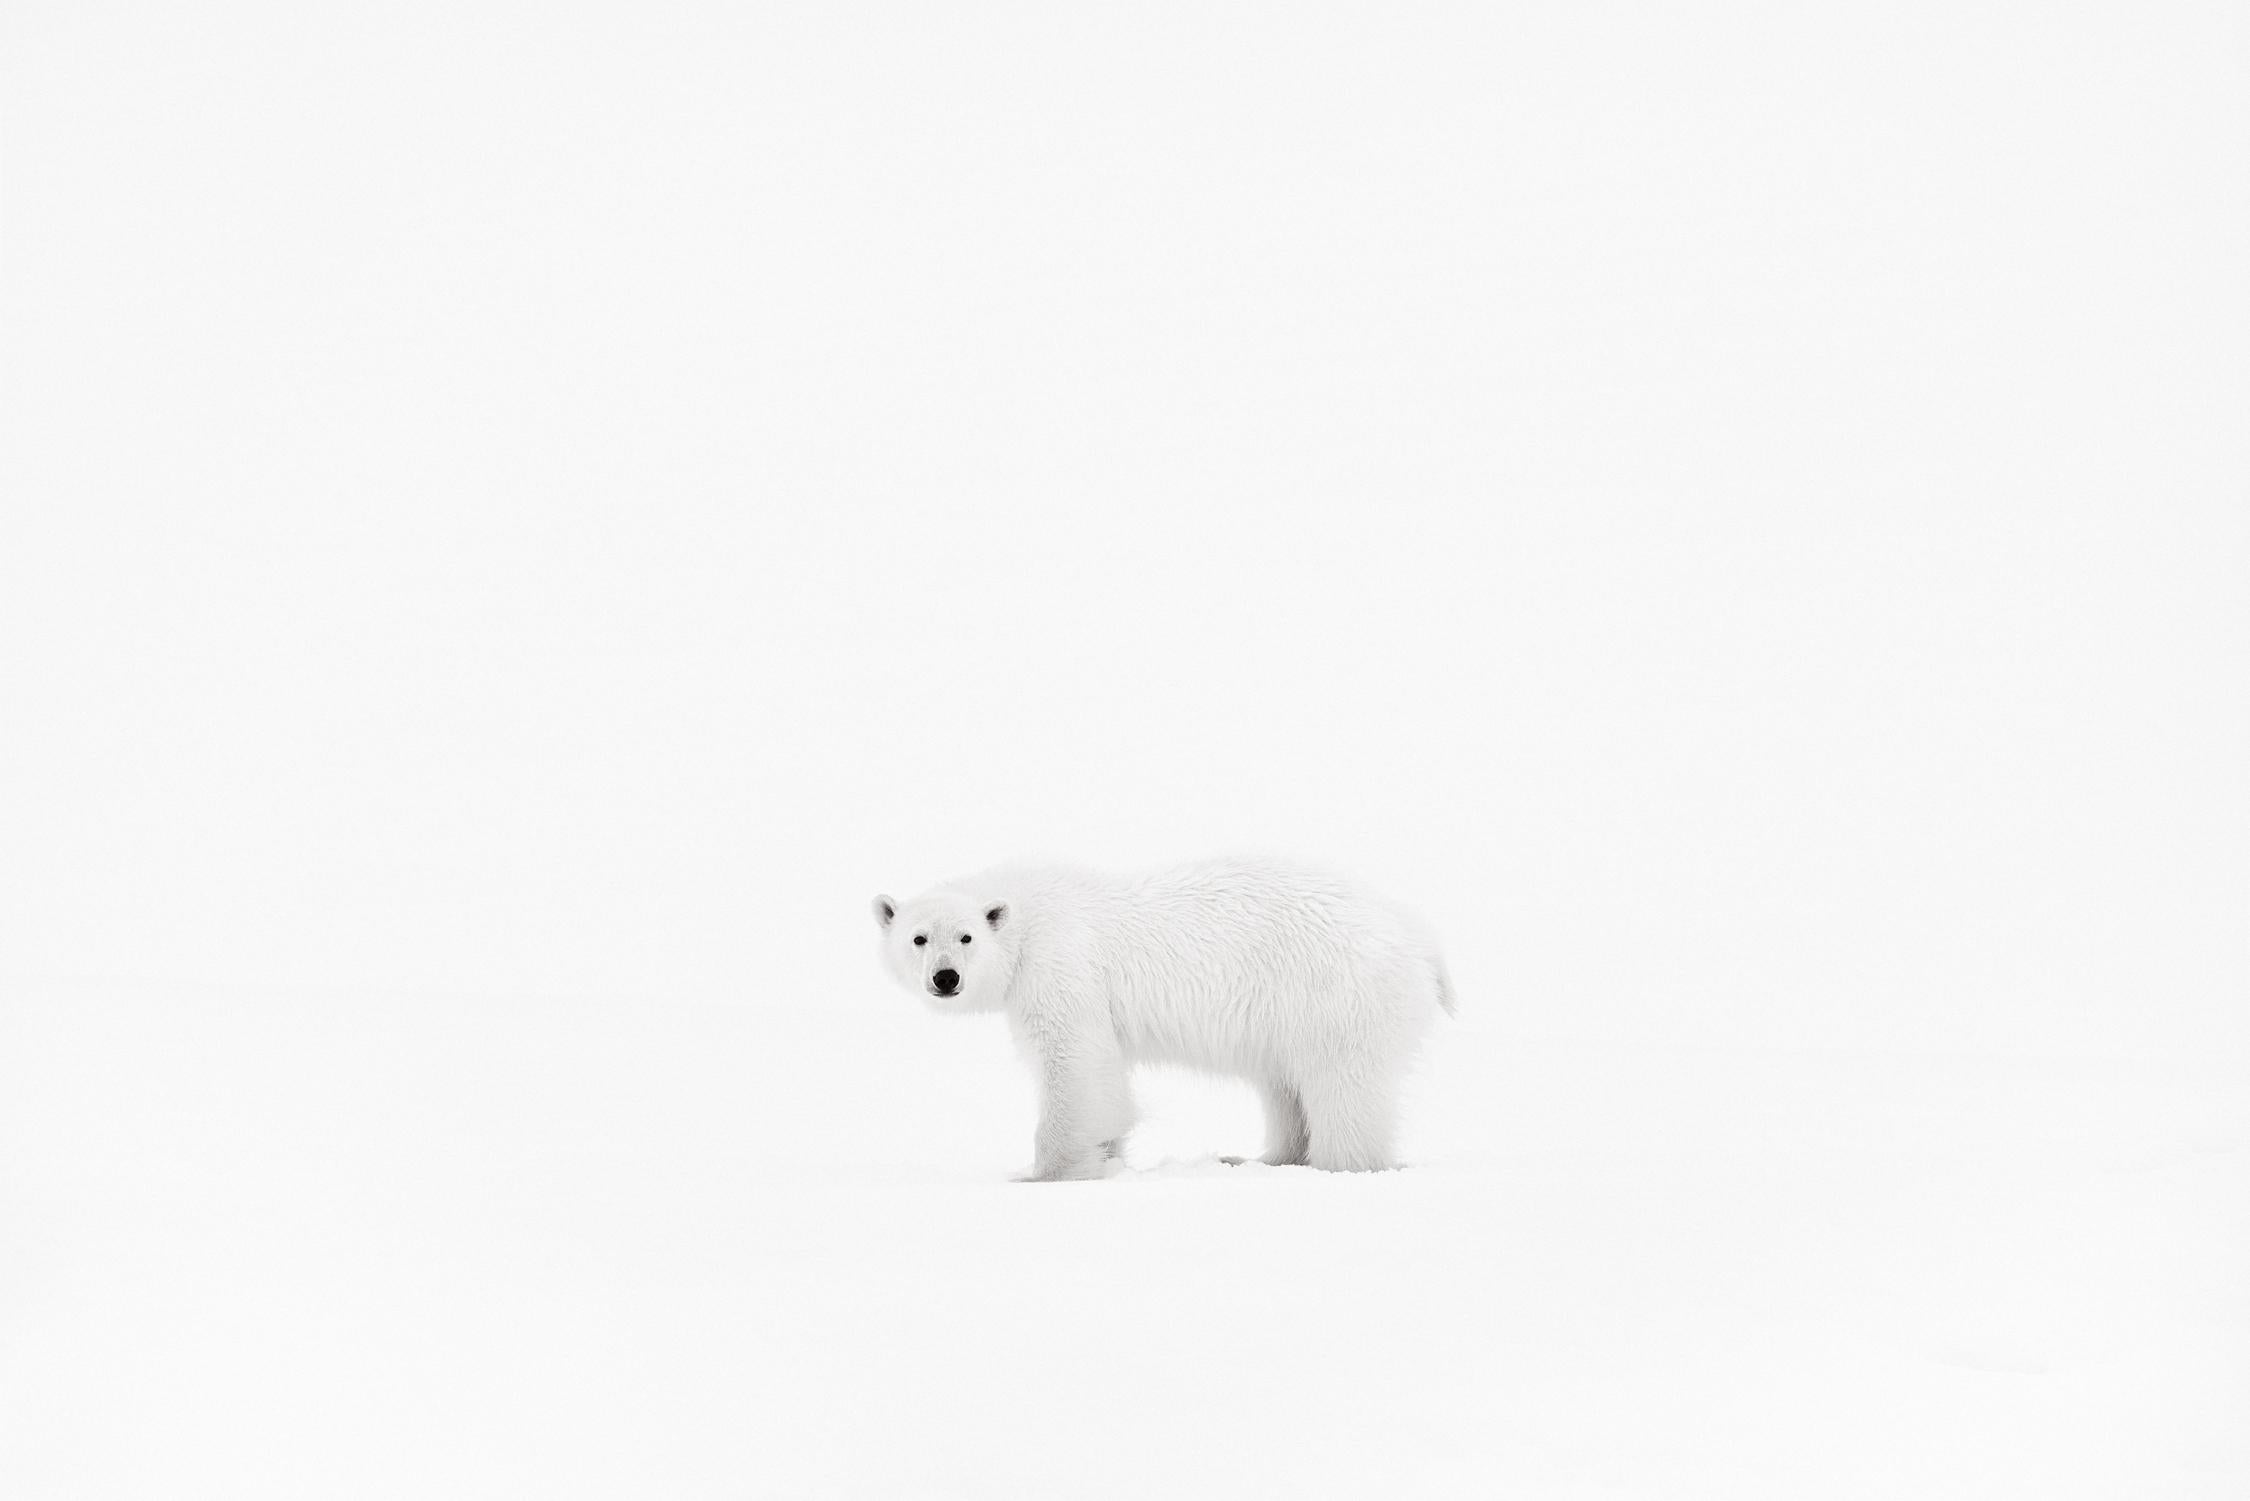 Drew Doggett Black and White Photograph – Polarbär mit minimalistischem Hintergrund, Tierwelt, Schwarz-Weiß-Fotografie